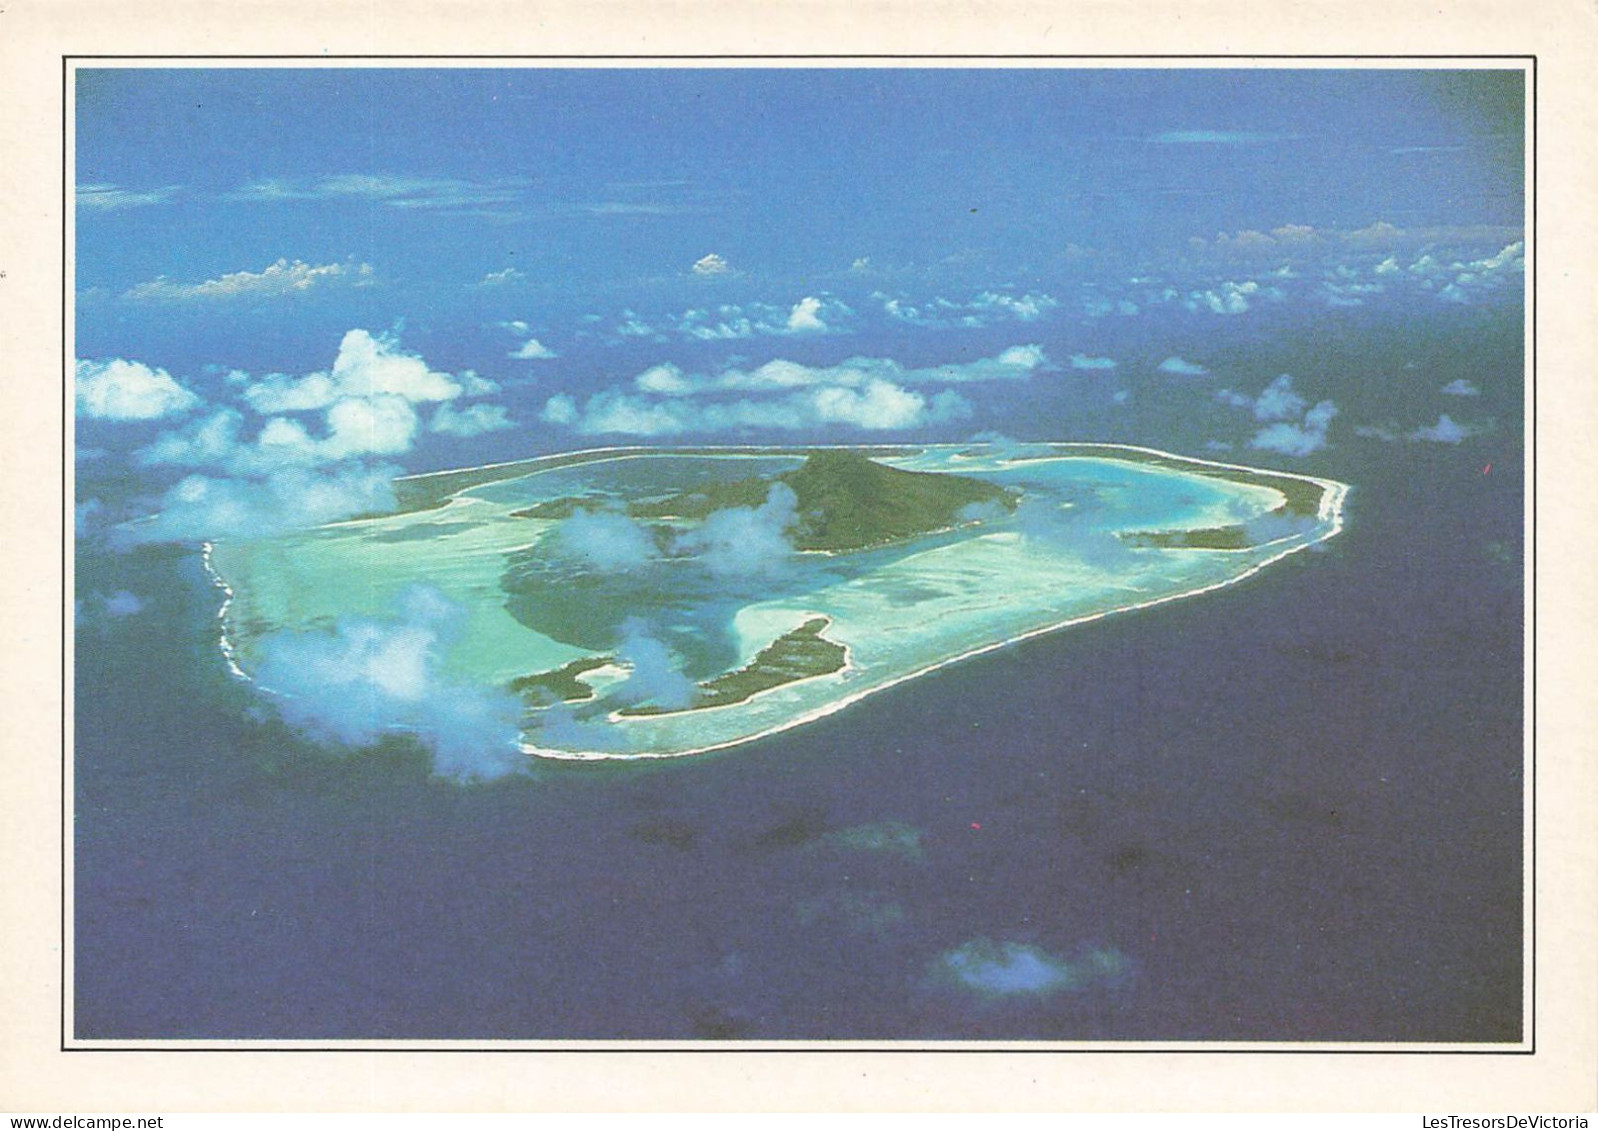 POLYNESIE FRANCAISE - Maupiti - L'île Vue Du Ciel - Colorisé - Carte Postale - Polynésie Française